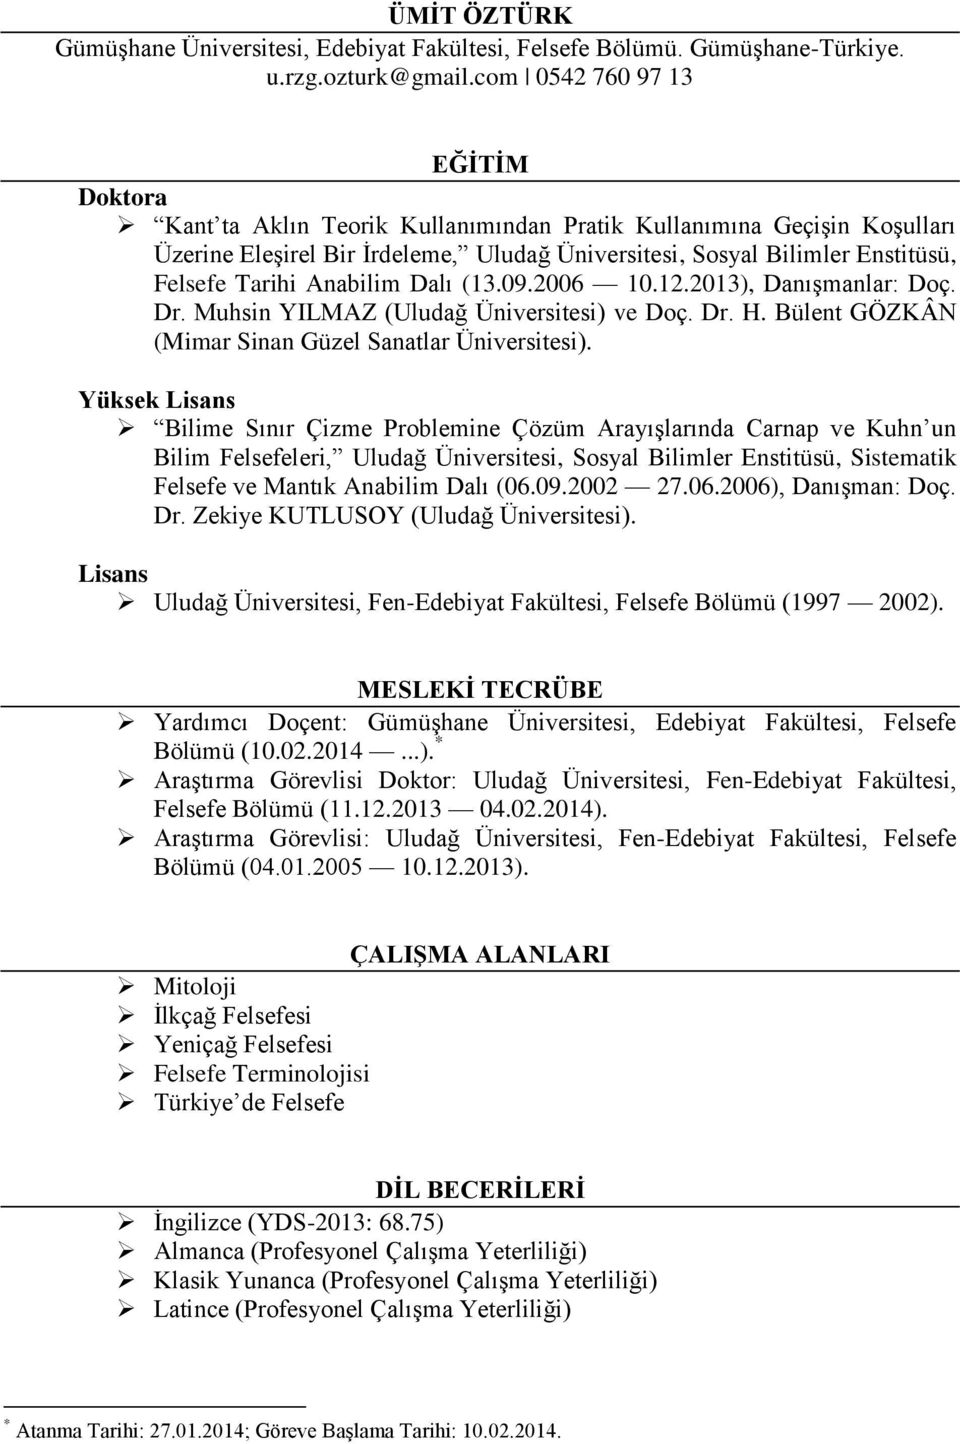 Anabilim Dalı (13.09.2006 10.12.2013), Danışmanlar: Doç. Dr. Muhsin YILMAZ (Uludağ Üniversitesi) ve Doç. Dr. H. Bülent GÖZKÂN (Mimar Sinan Güzel Sanatlar Üniversitesi).